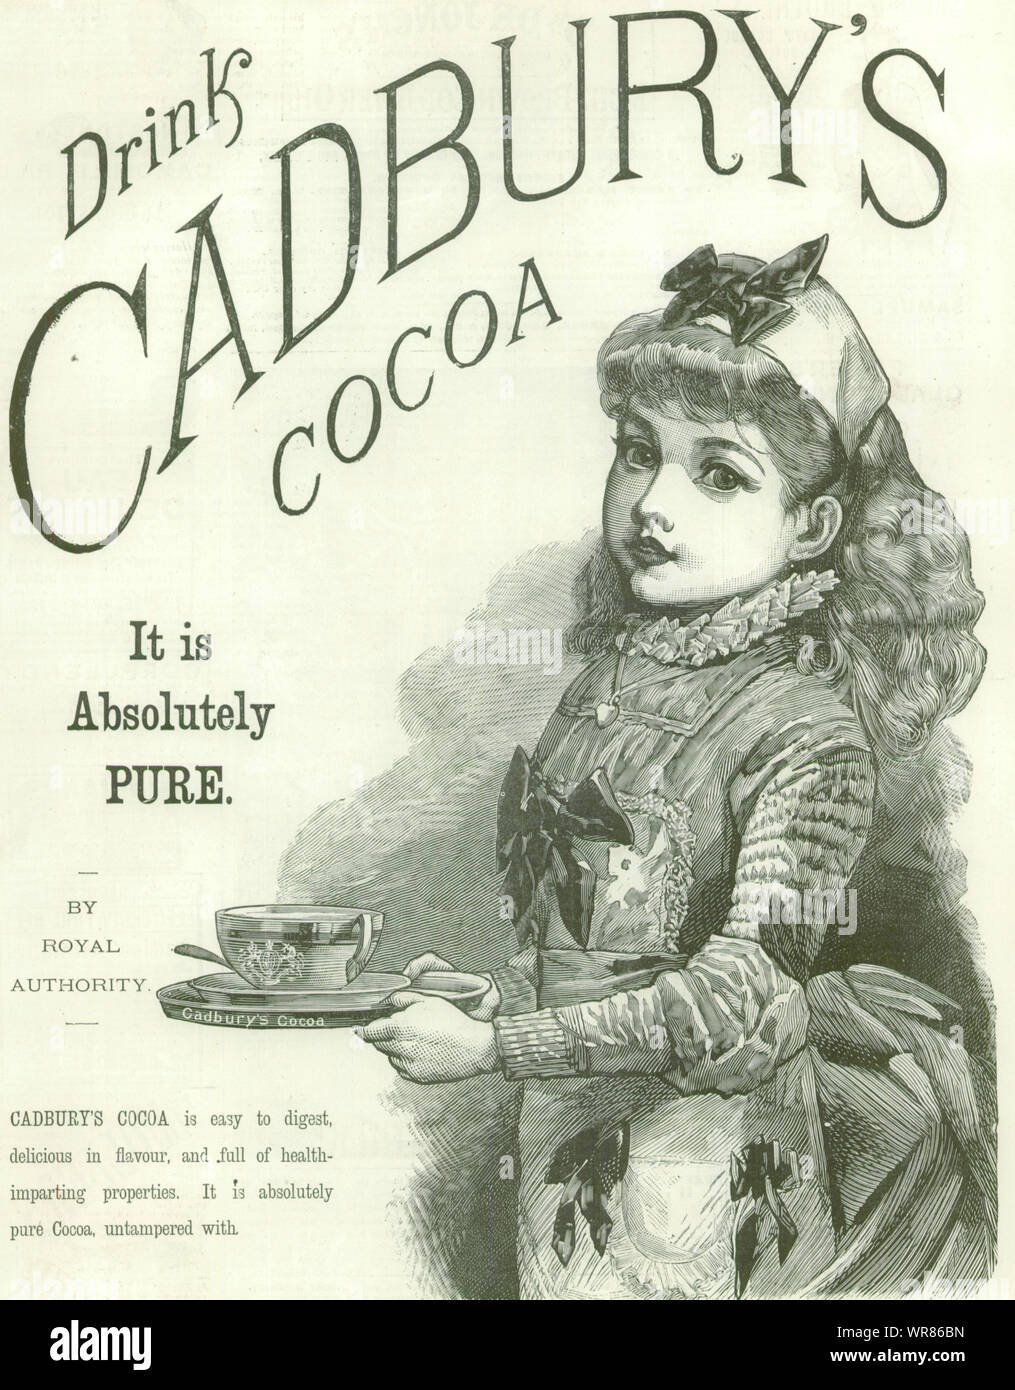 Getränke Cadbury Cocoa. Es ist absolut rein. Anzeige. Essen 1889 ILN volle Seite Stockfoto